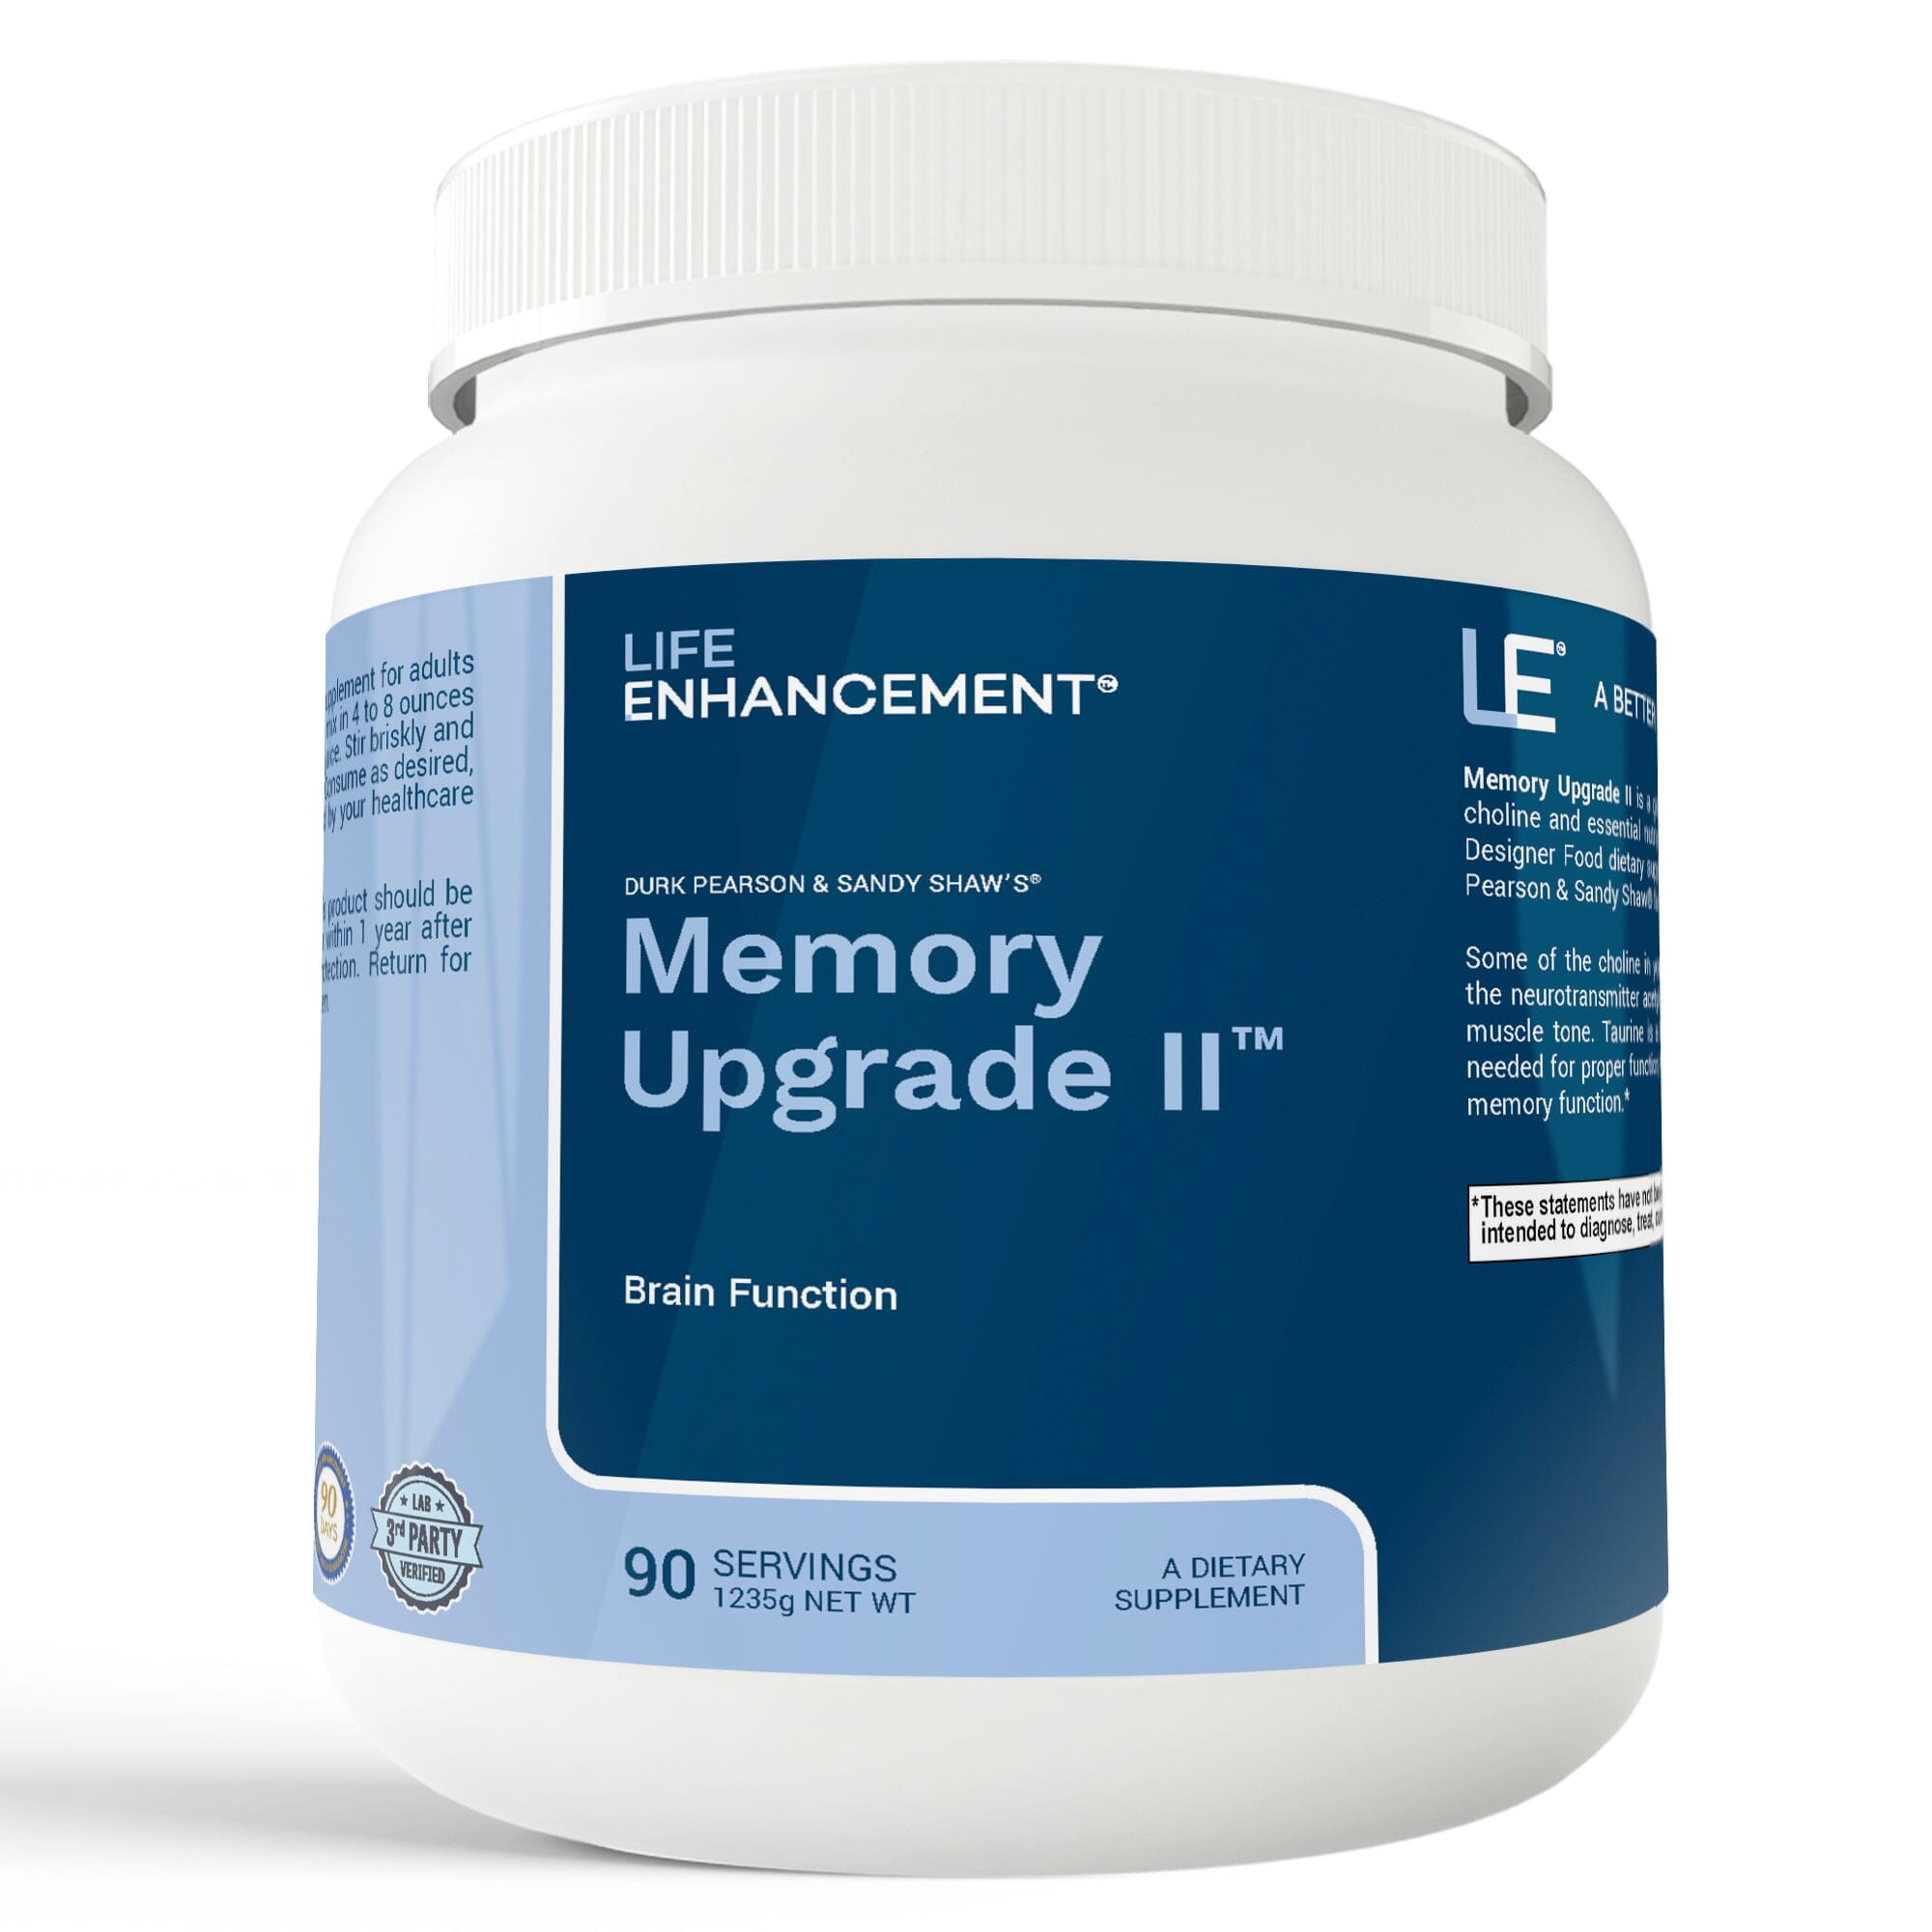 Memory Upgrade II™